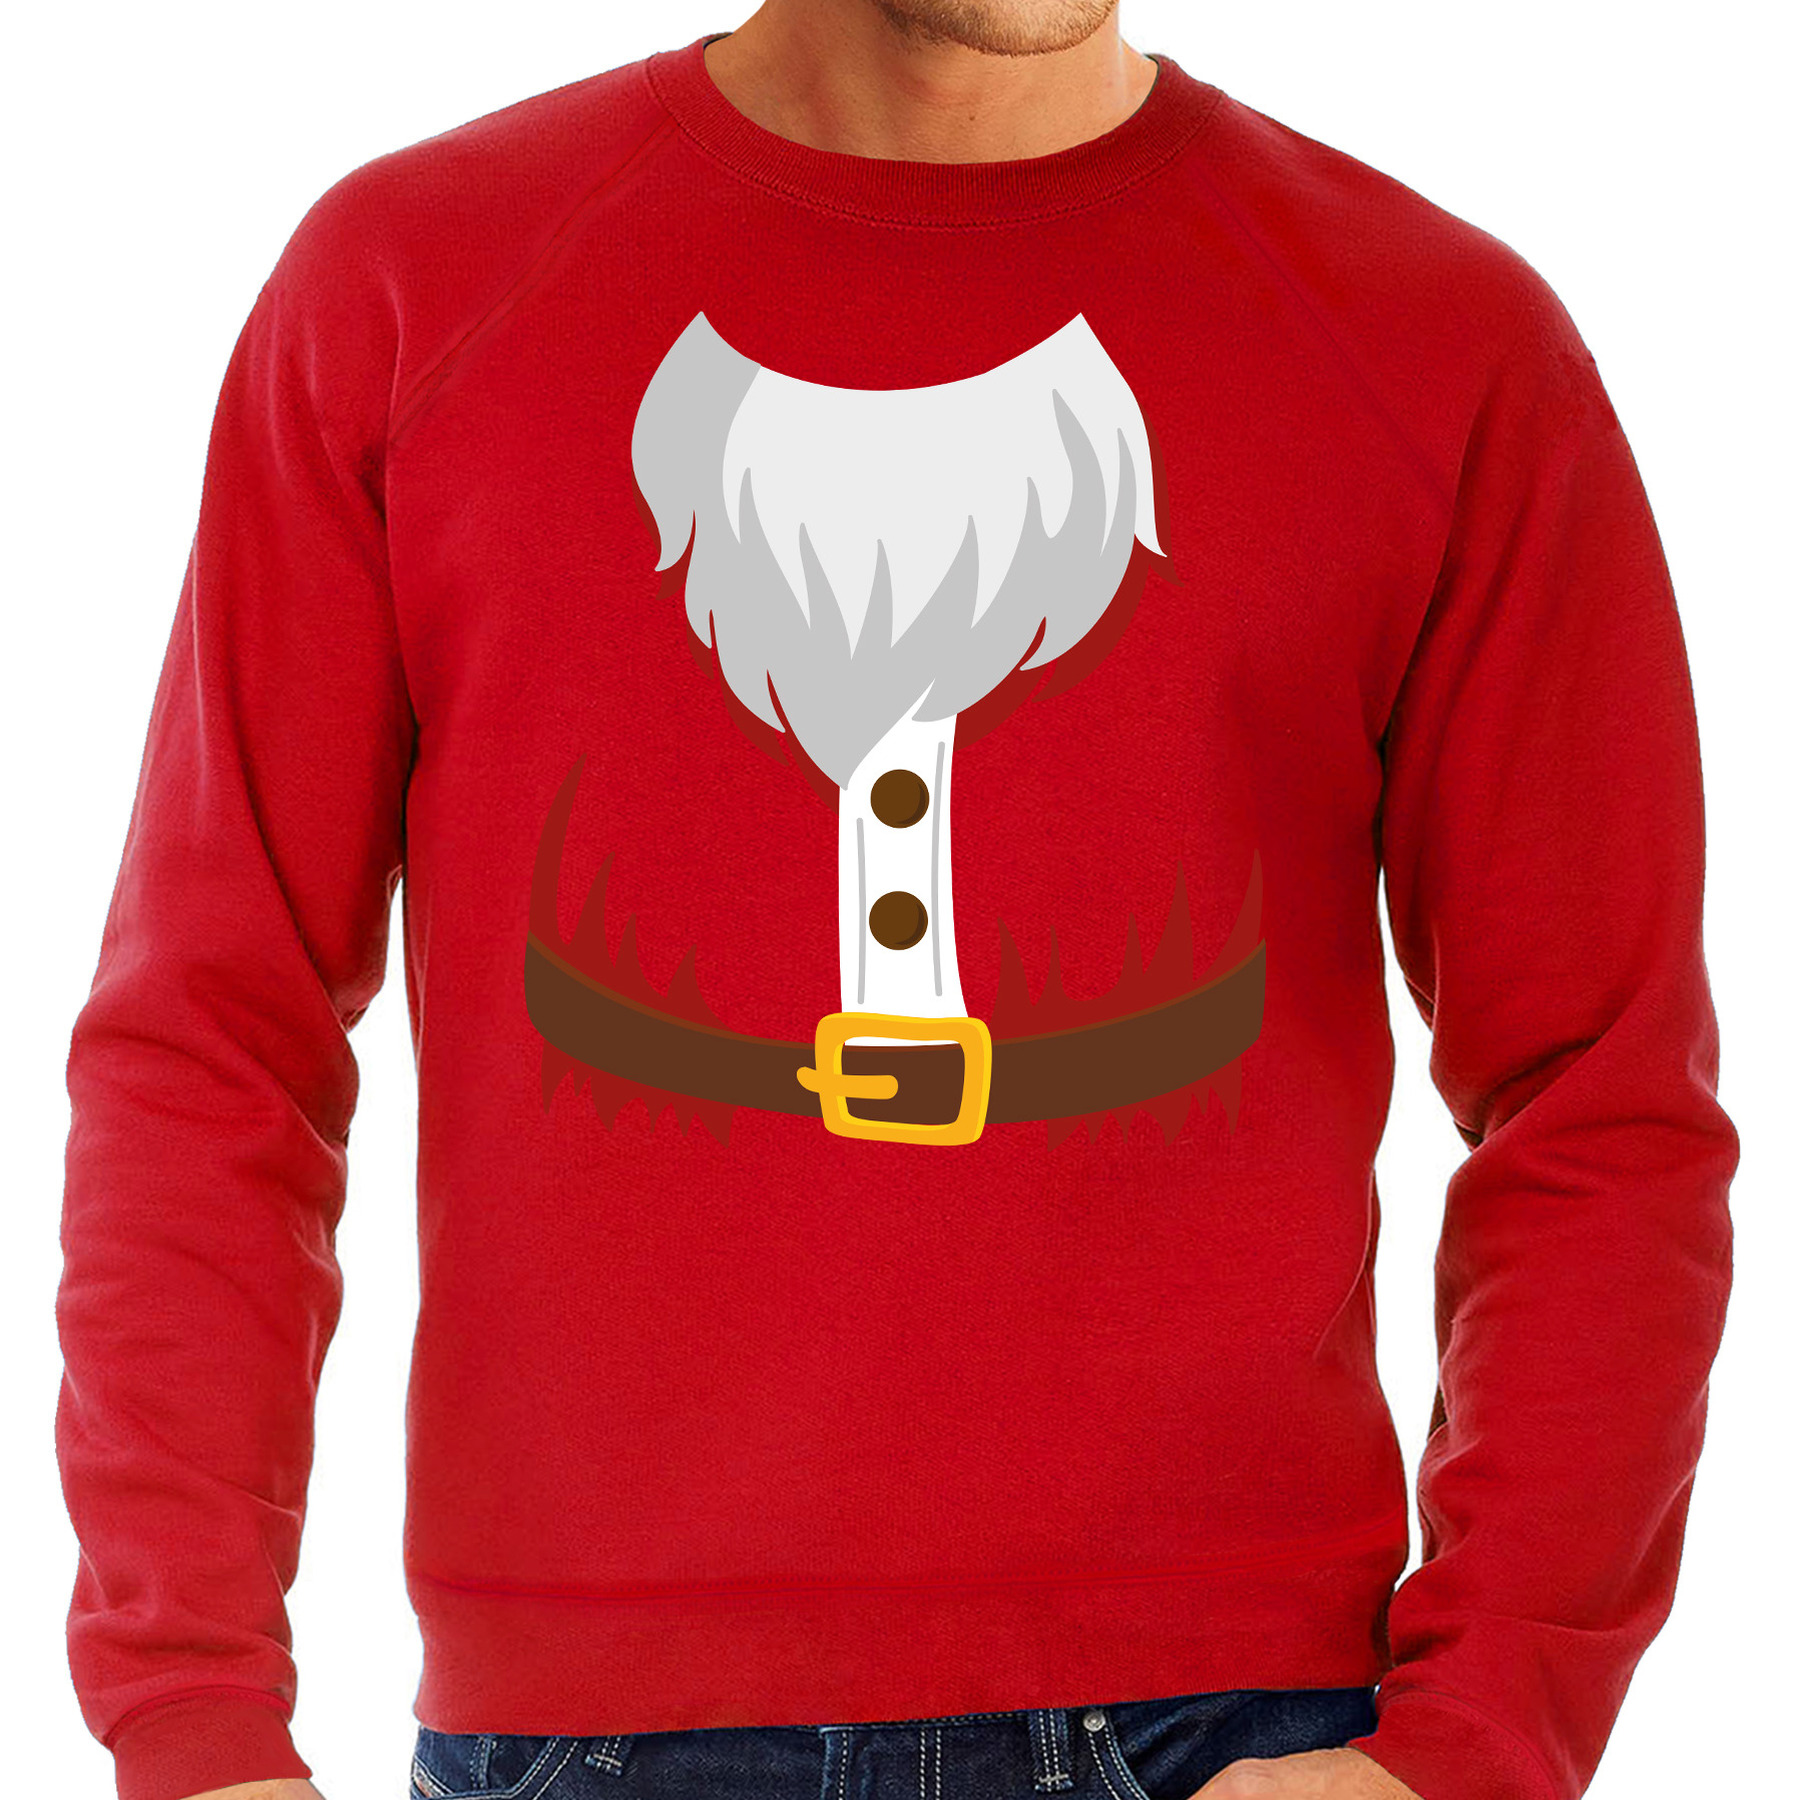 Kerstman kostuum verkleed sweater-trui rood voor heren